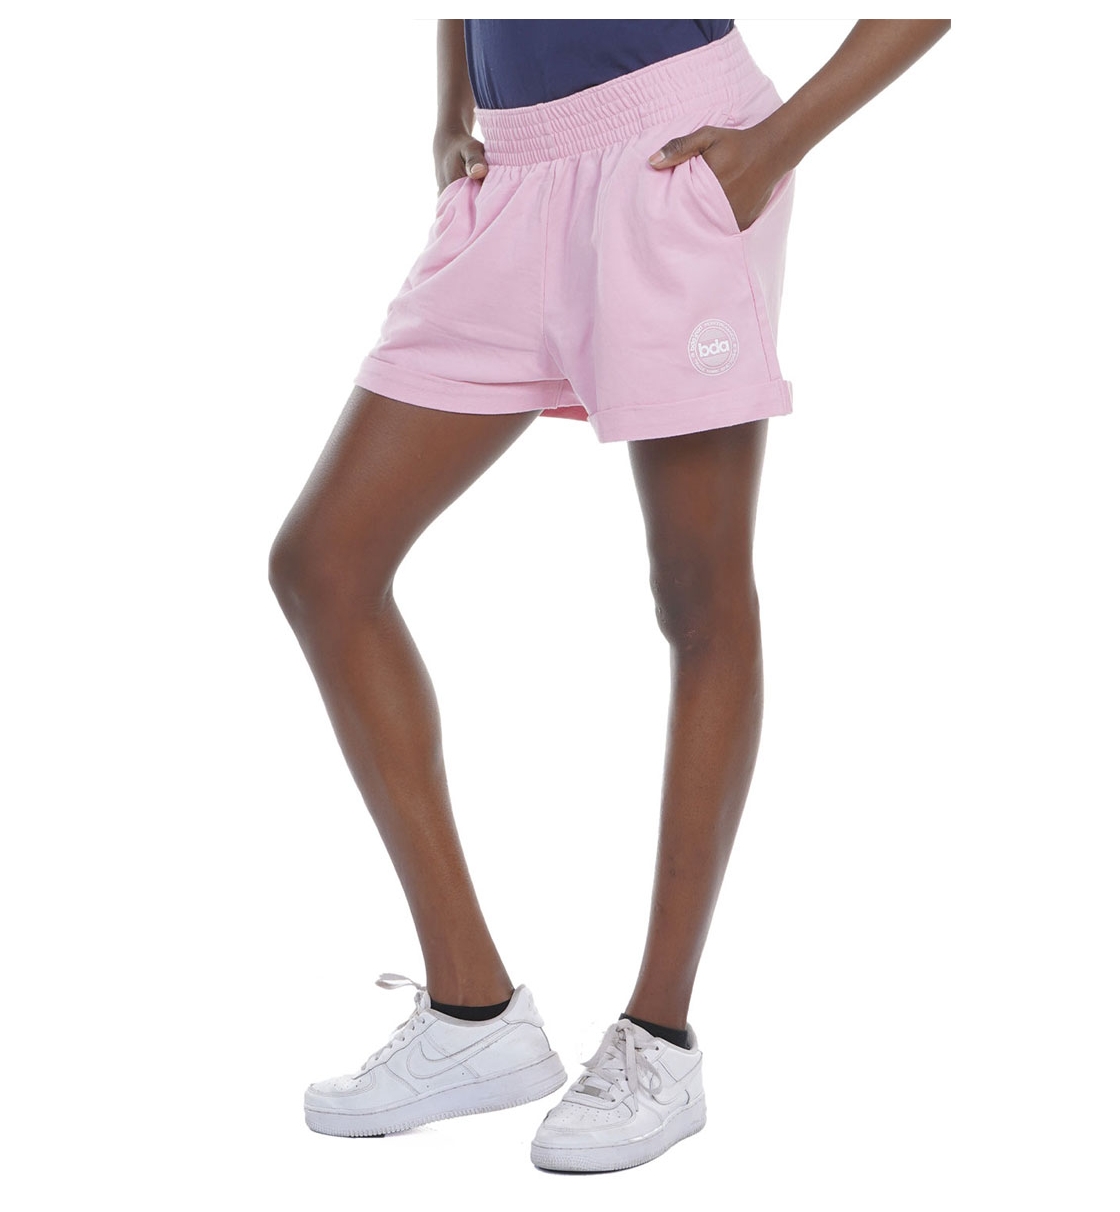 Body Action Γυναικείο Αθλητικό Σορτς Ss22 Women'S Sportswear Shorts 031227